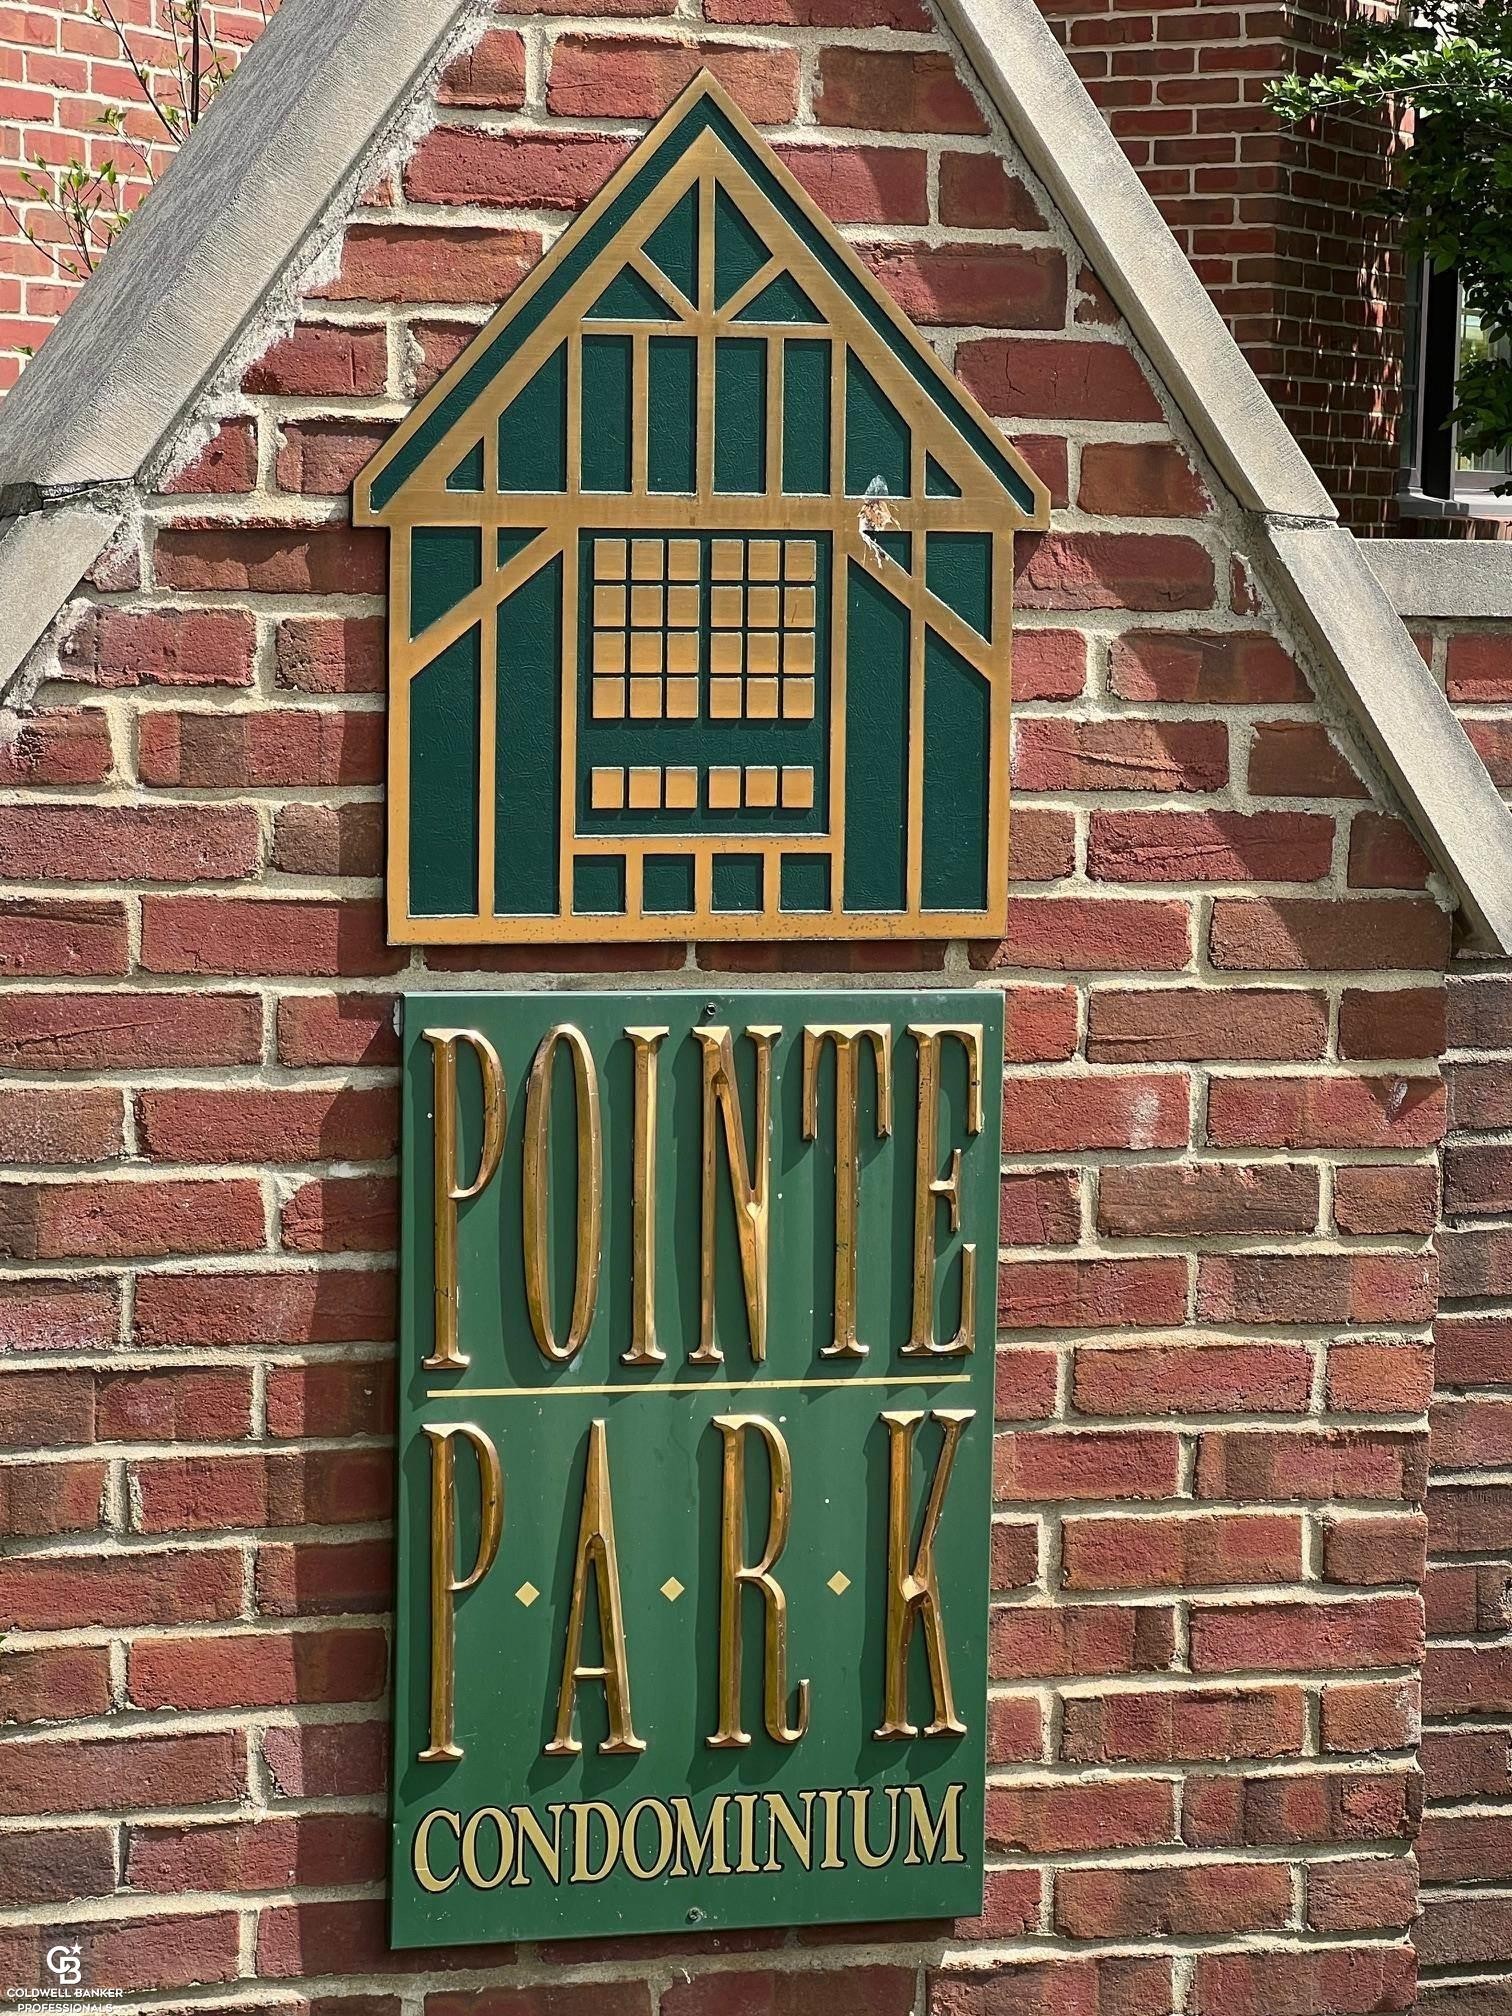 1. 24 Pointe Park